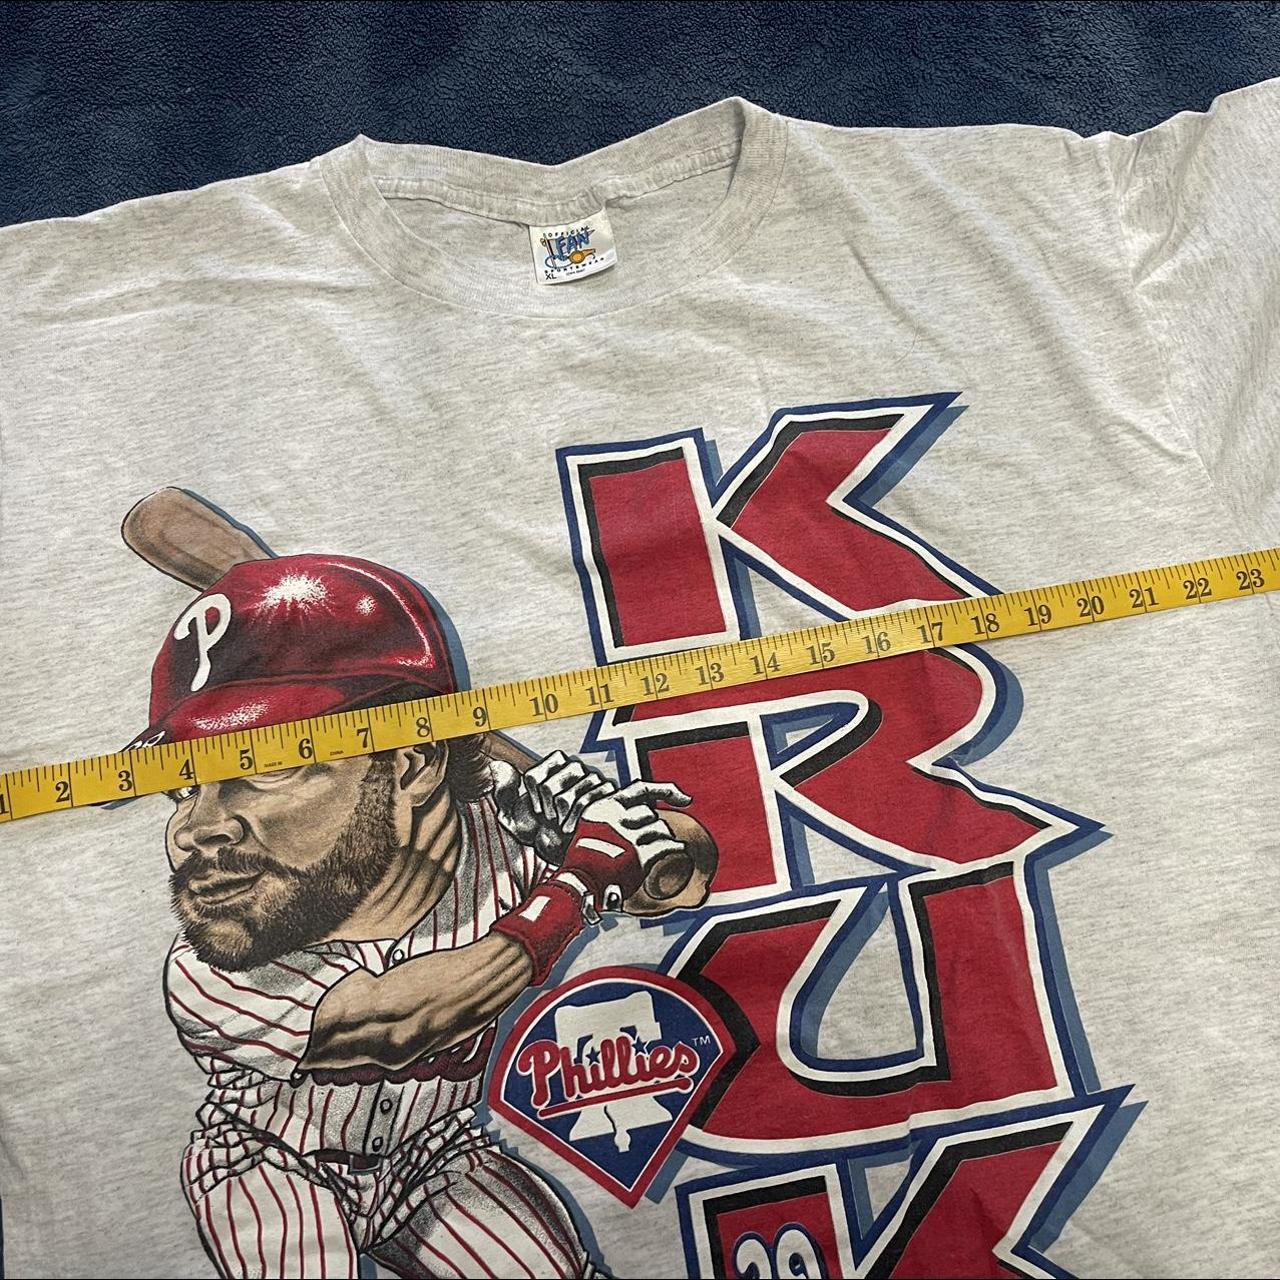 Official John kruk philadelphia phillies baseball vintage logo shirt